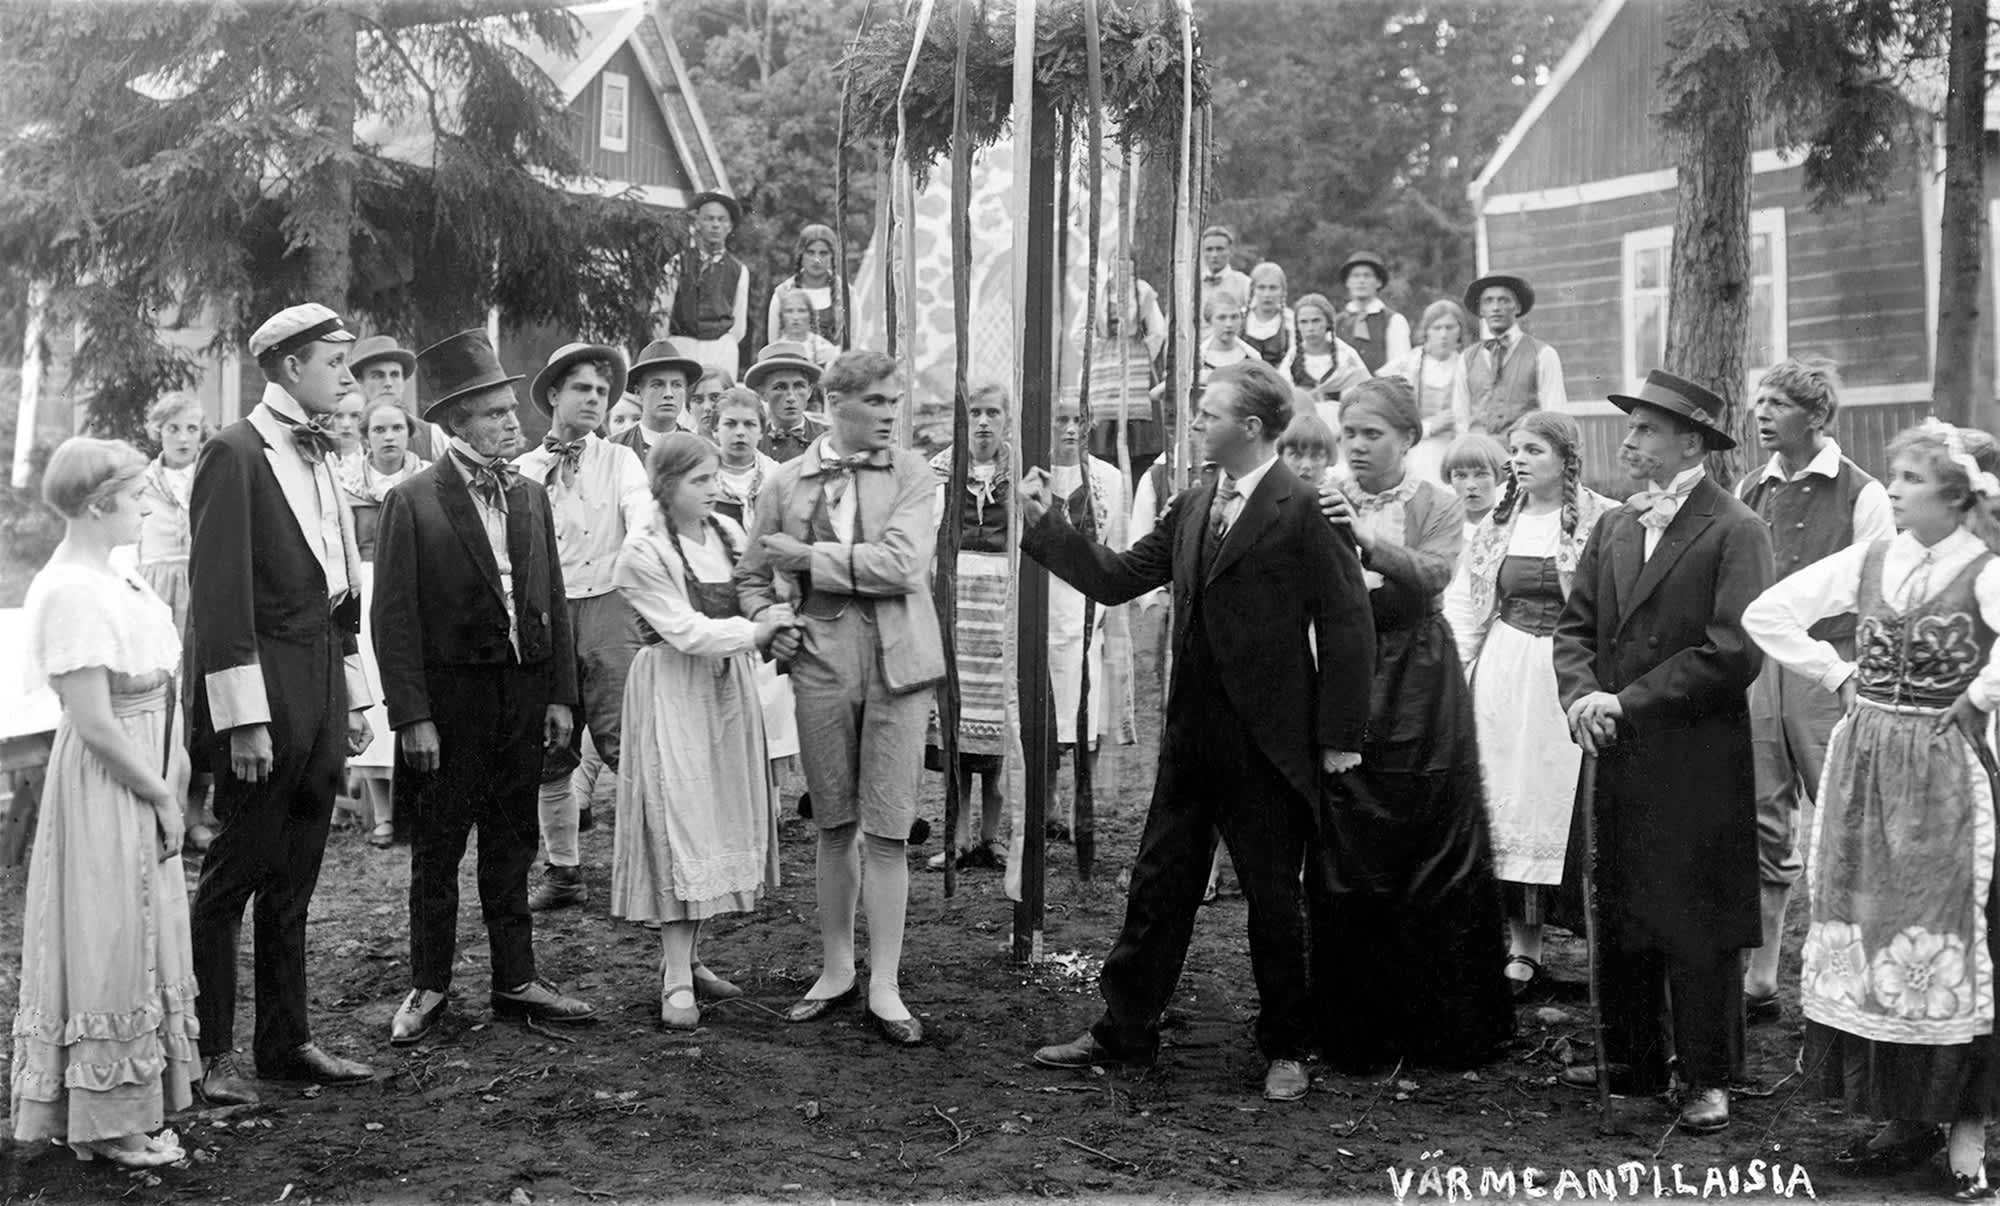 Helsingin Työväen näyttämön esitys Vermlantilaisia Vallilan ulkoilmateatterissa 1927